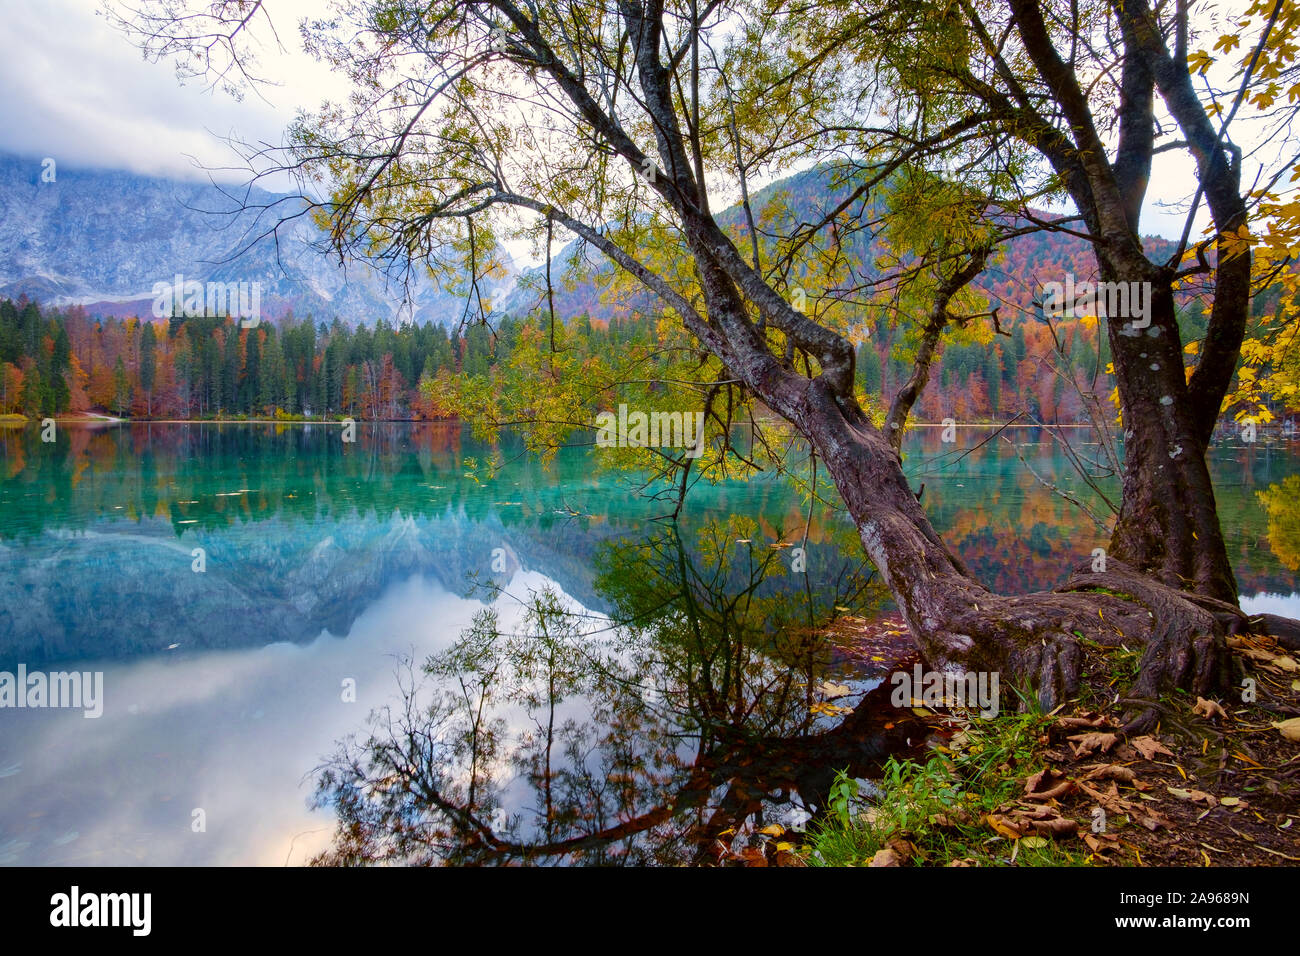 Herbst Landschaft am See Fusine - Lago di Fusine - Bergsee in Nord Italien in den Alpen. Stockfoto